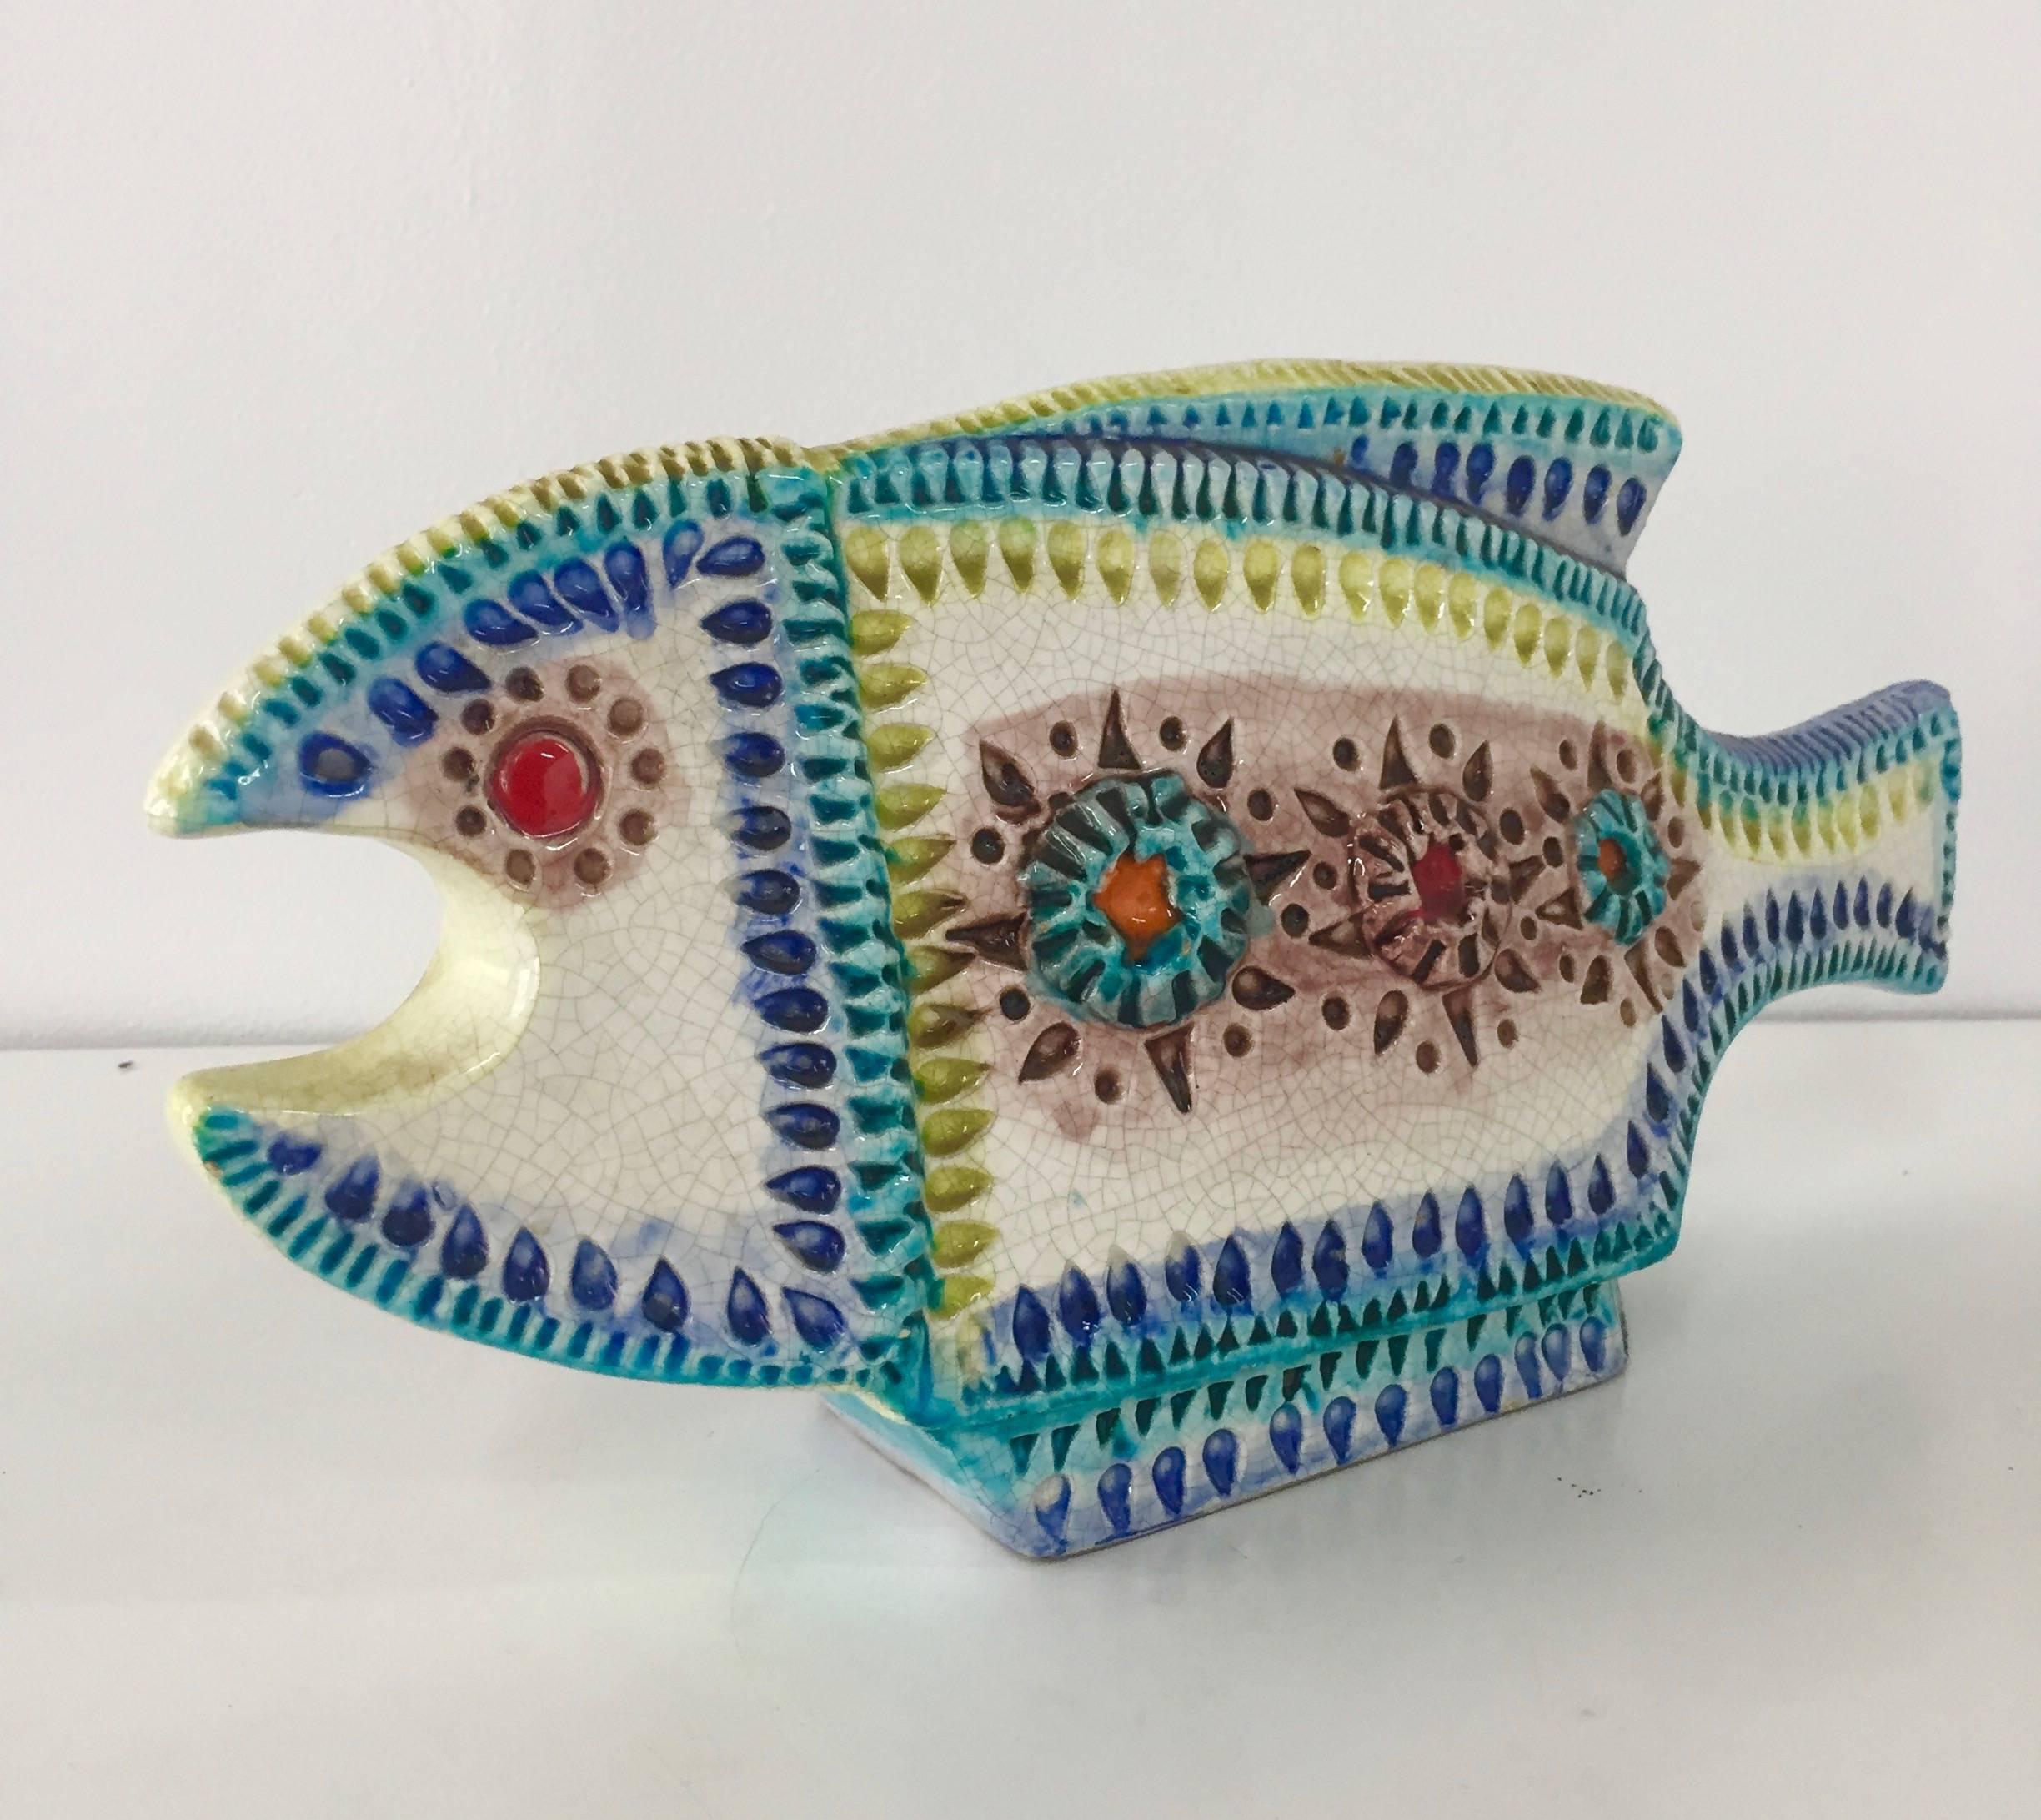 Colorful ceramic fish by Aldo Londi for Bitossi.